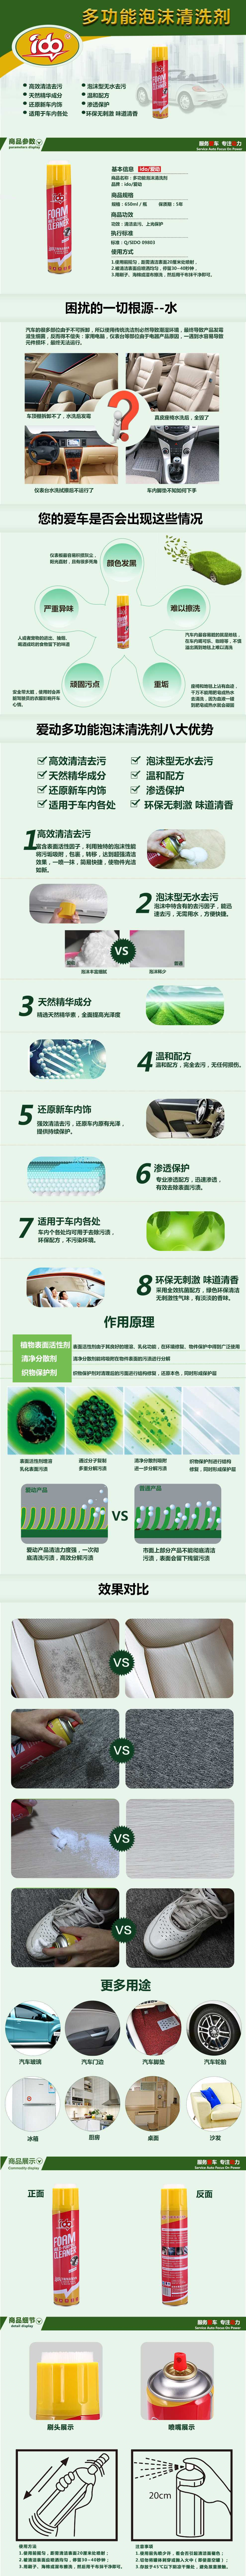 6功能型保養清洗劑-多功能泡沫清洗劑-萬能泡沫清洗劑